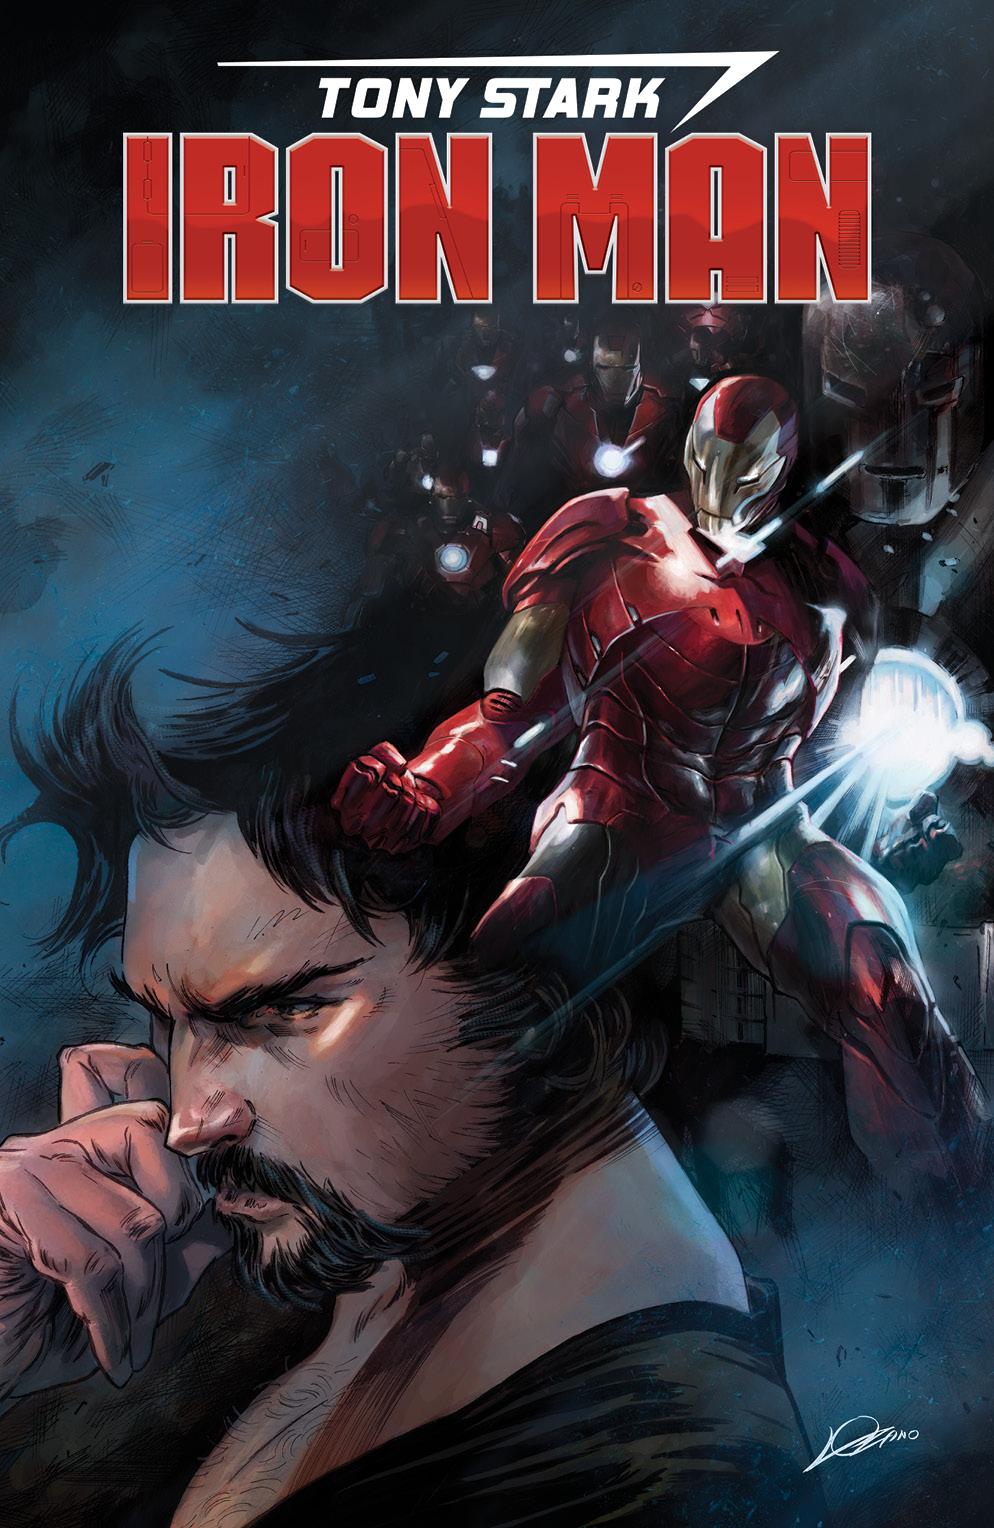 Tony Stark: Iron Man Vol. 1 #1